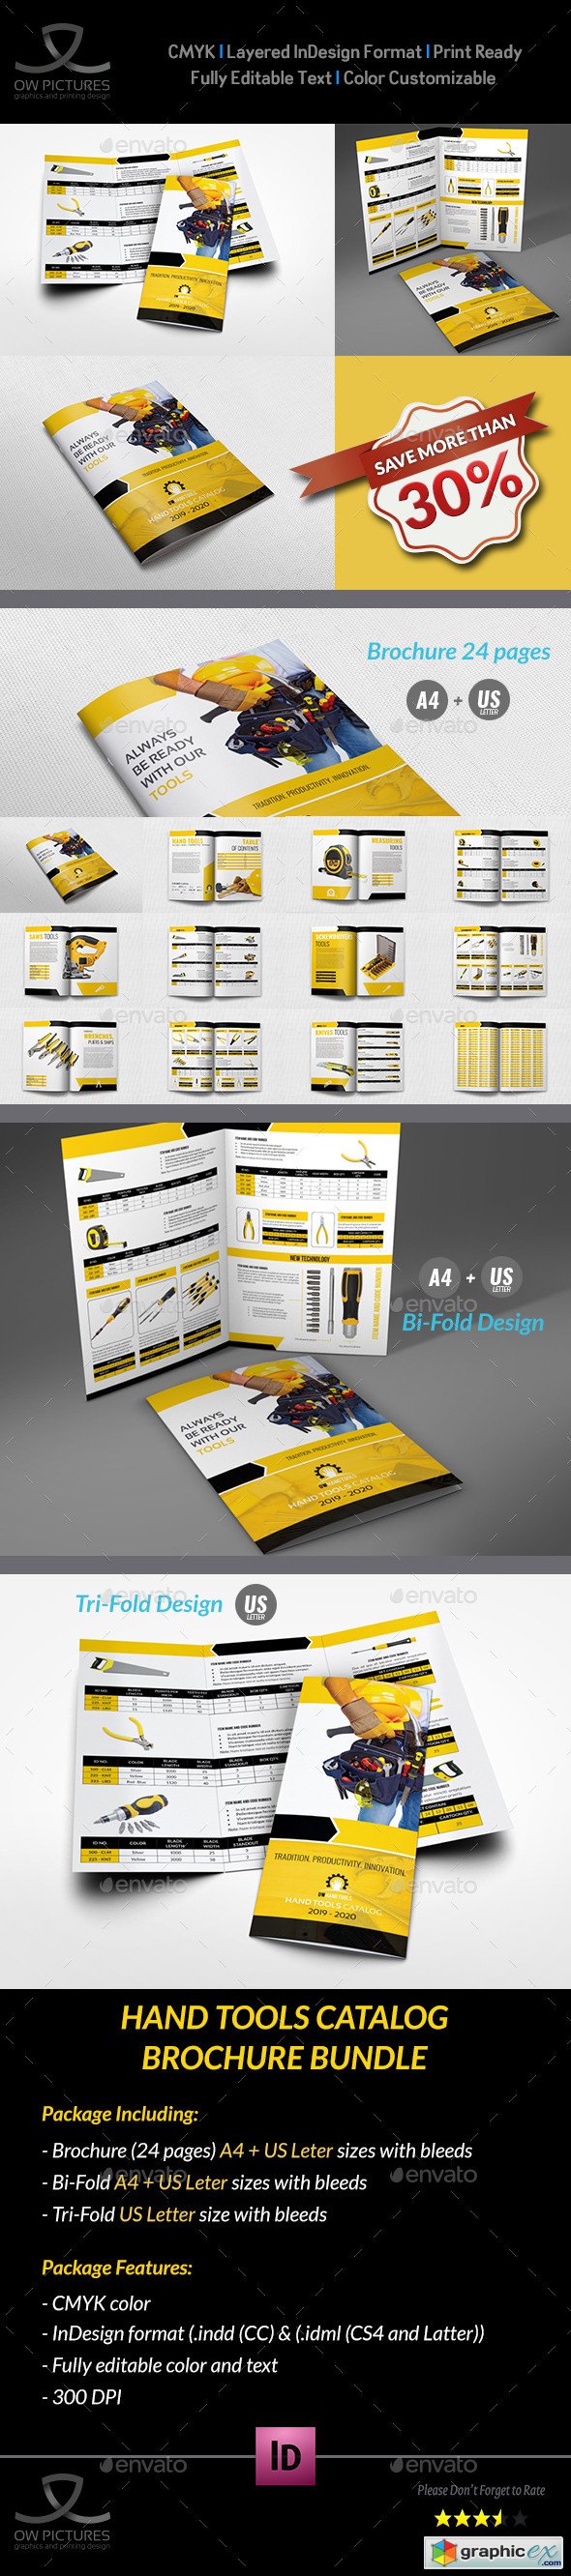 Hand Tools Catalog Brochure Bundle